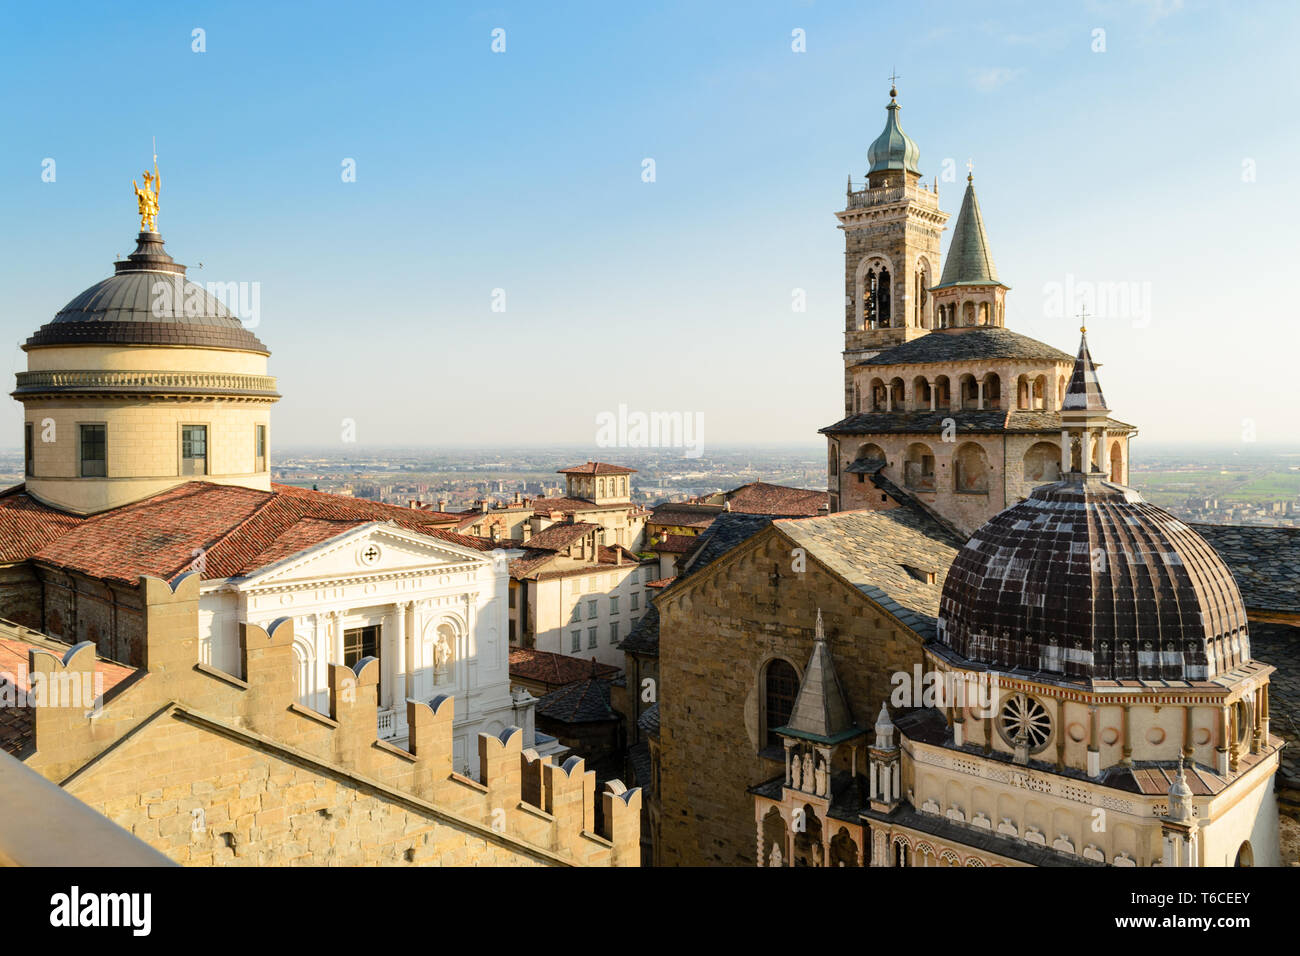 La basilique de Santa Maria Maggiore à Bergame haute ville dans le nord de l'Italie, vu du haut du clocher de l'hôtel de ville. Banque D'Images